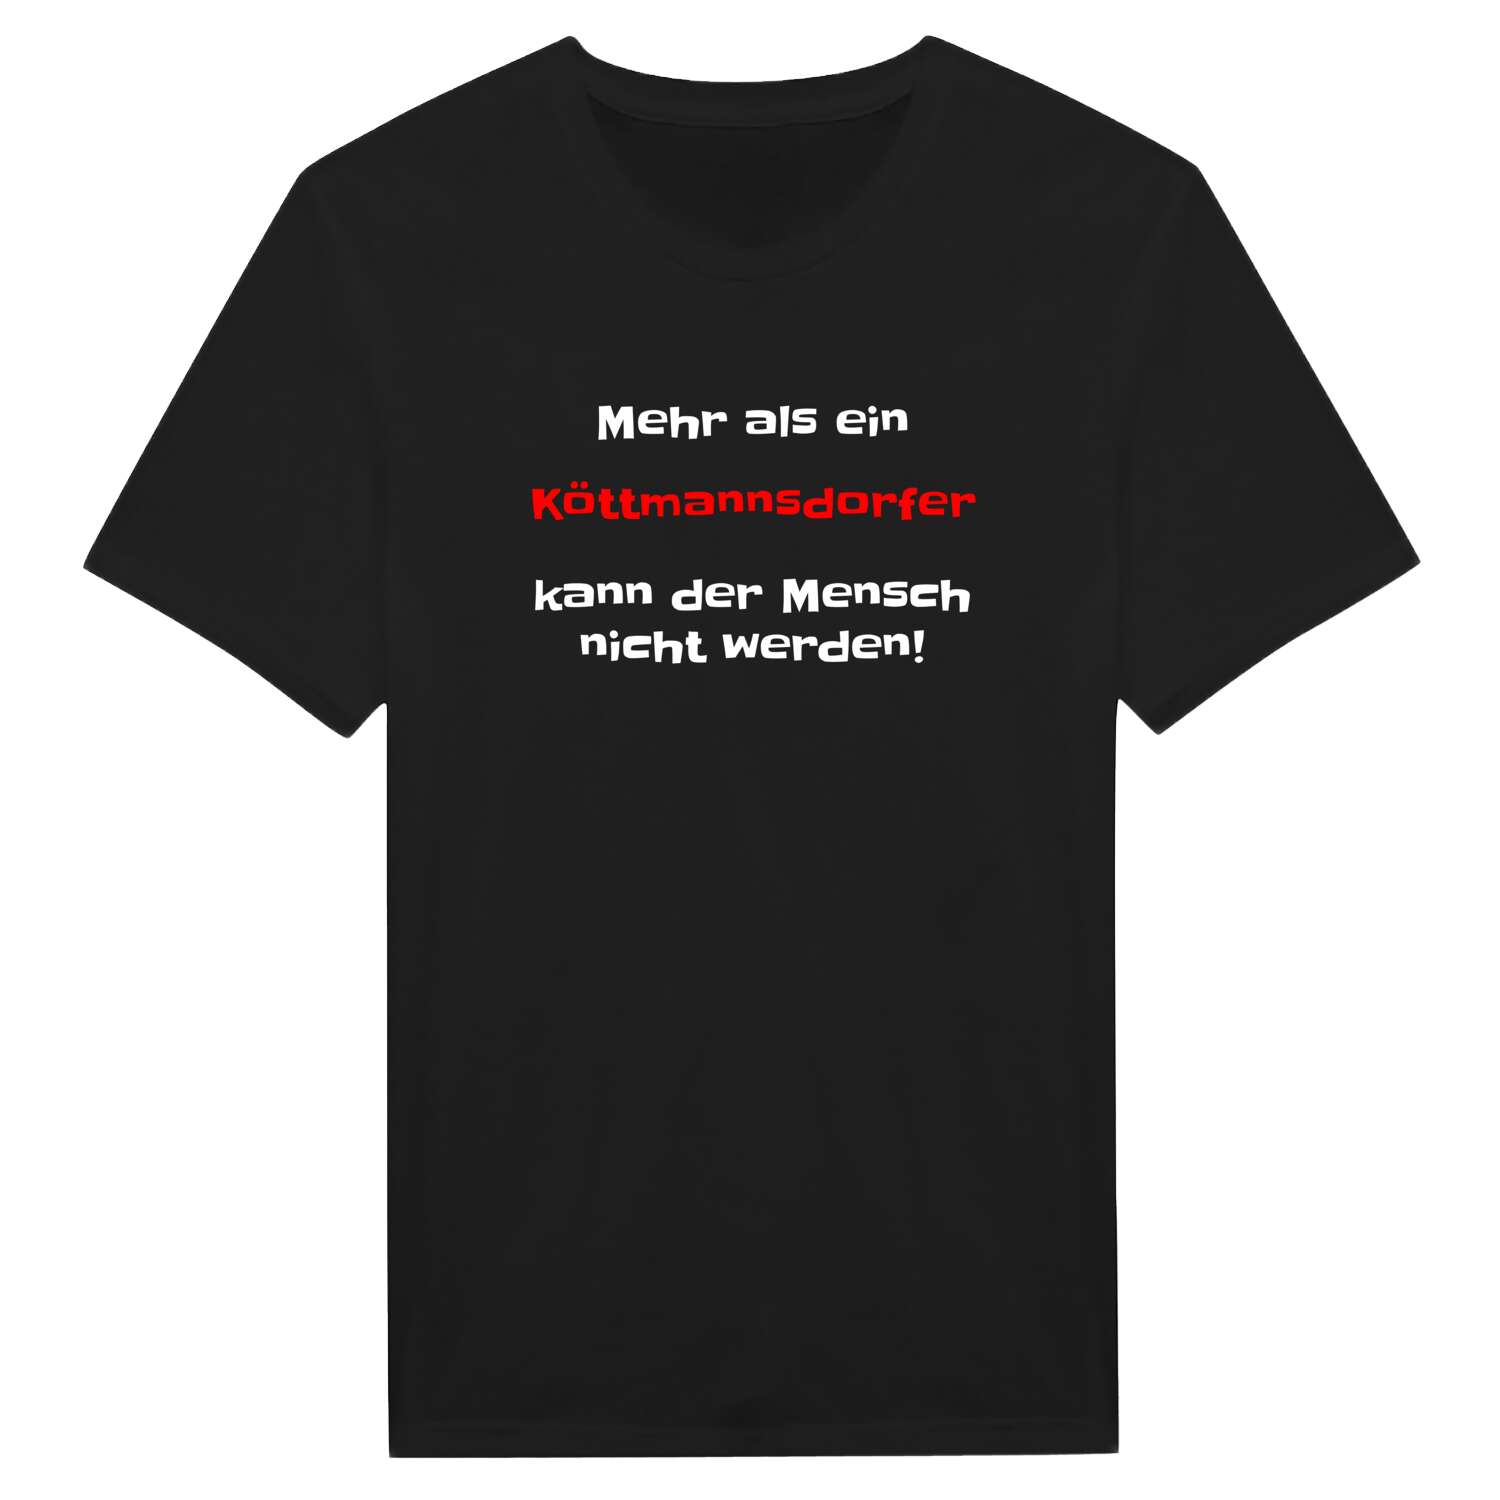 Köttmannsdorf T-Shirt »Mehr als ein«